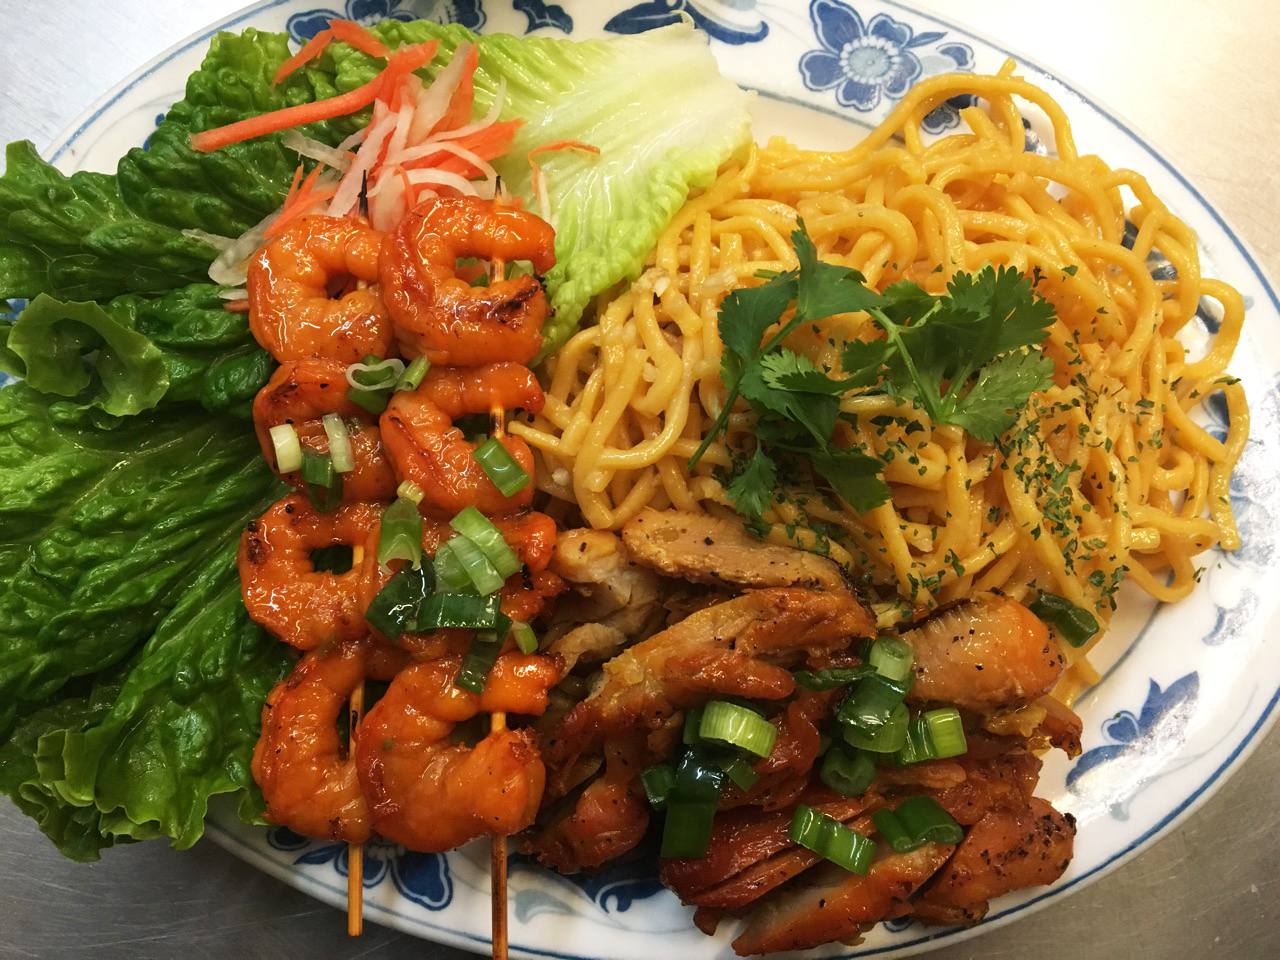 #3. Grilled Shrimp, Pork on Garlic Noodles